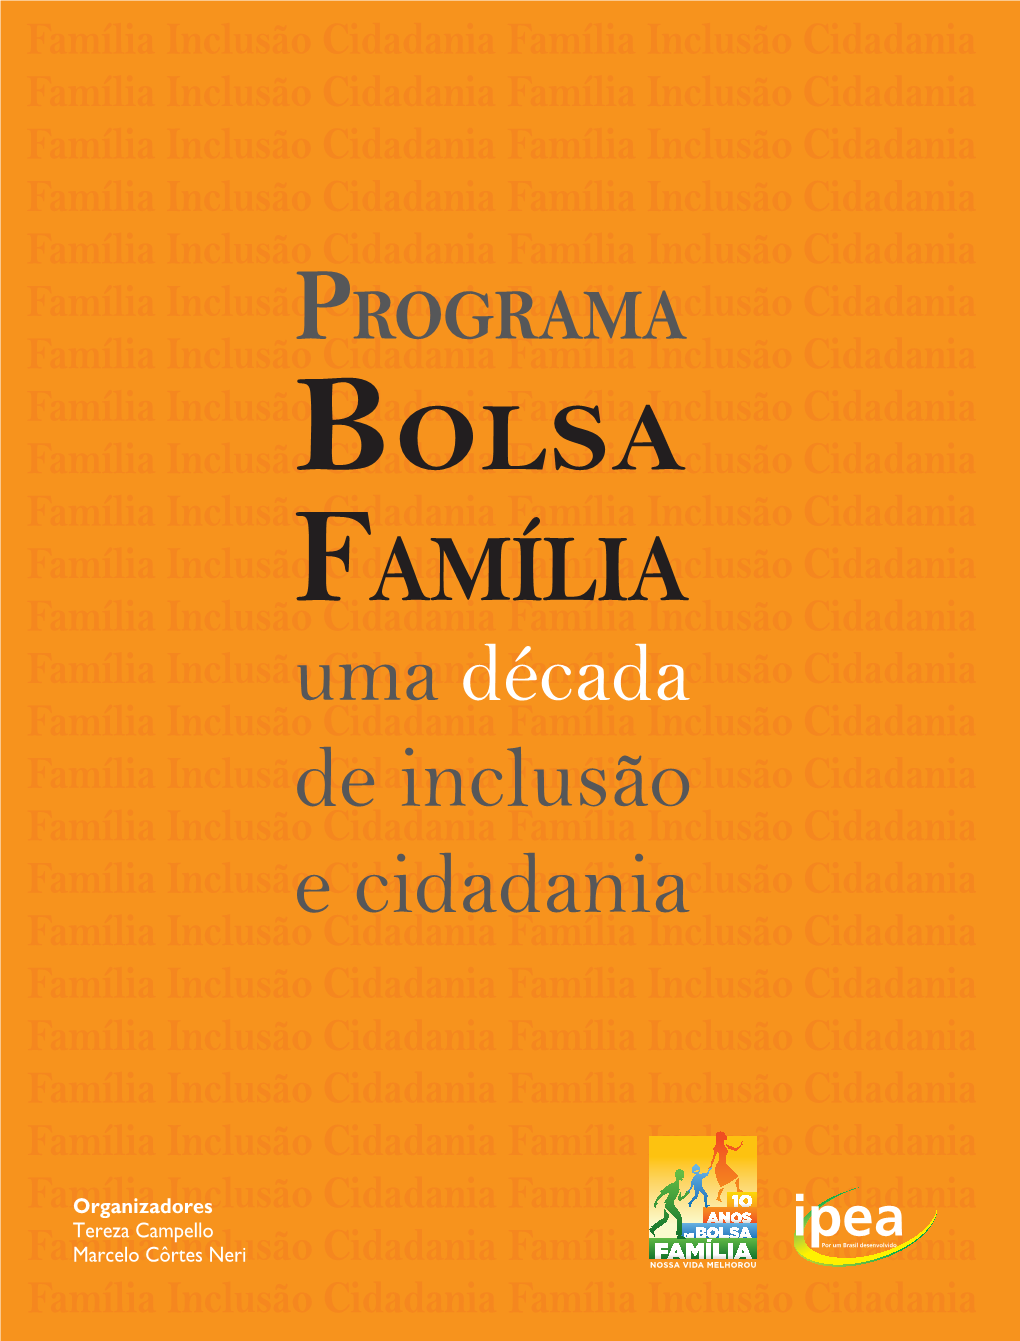 Programa Bolsa Família (PBF) Beneficia 50 Milhões De Pessoas E Está Família Inclusão Cidadania Família Inclusão Cidadania